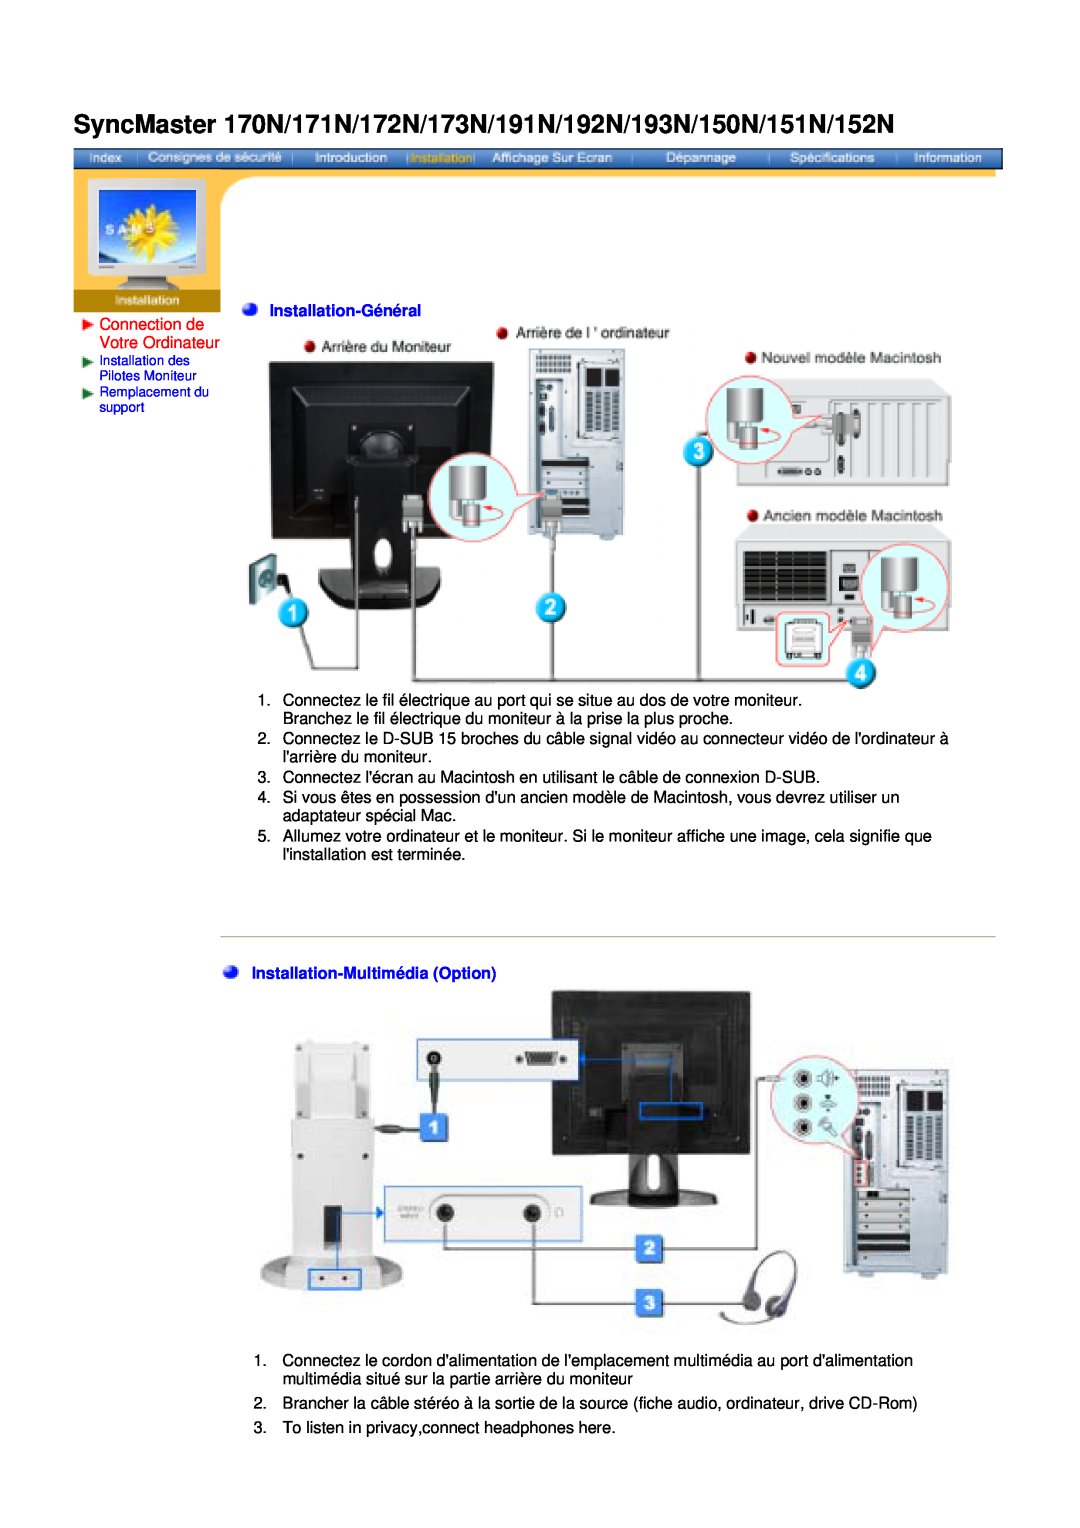 Samsung NB17BSPS/EDC manual SyncMaster 170N/171N/172N/173N/191N/192N/193N/150N/151N/152N, Connection de Votre Ordinateur 